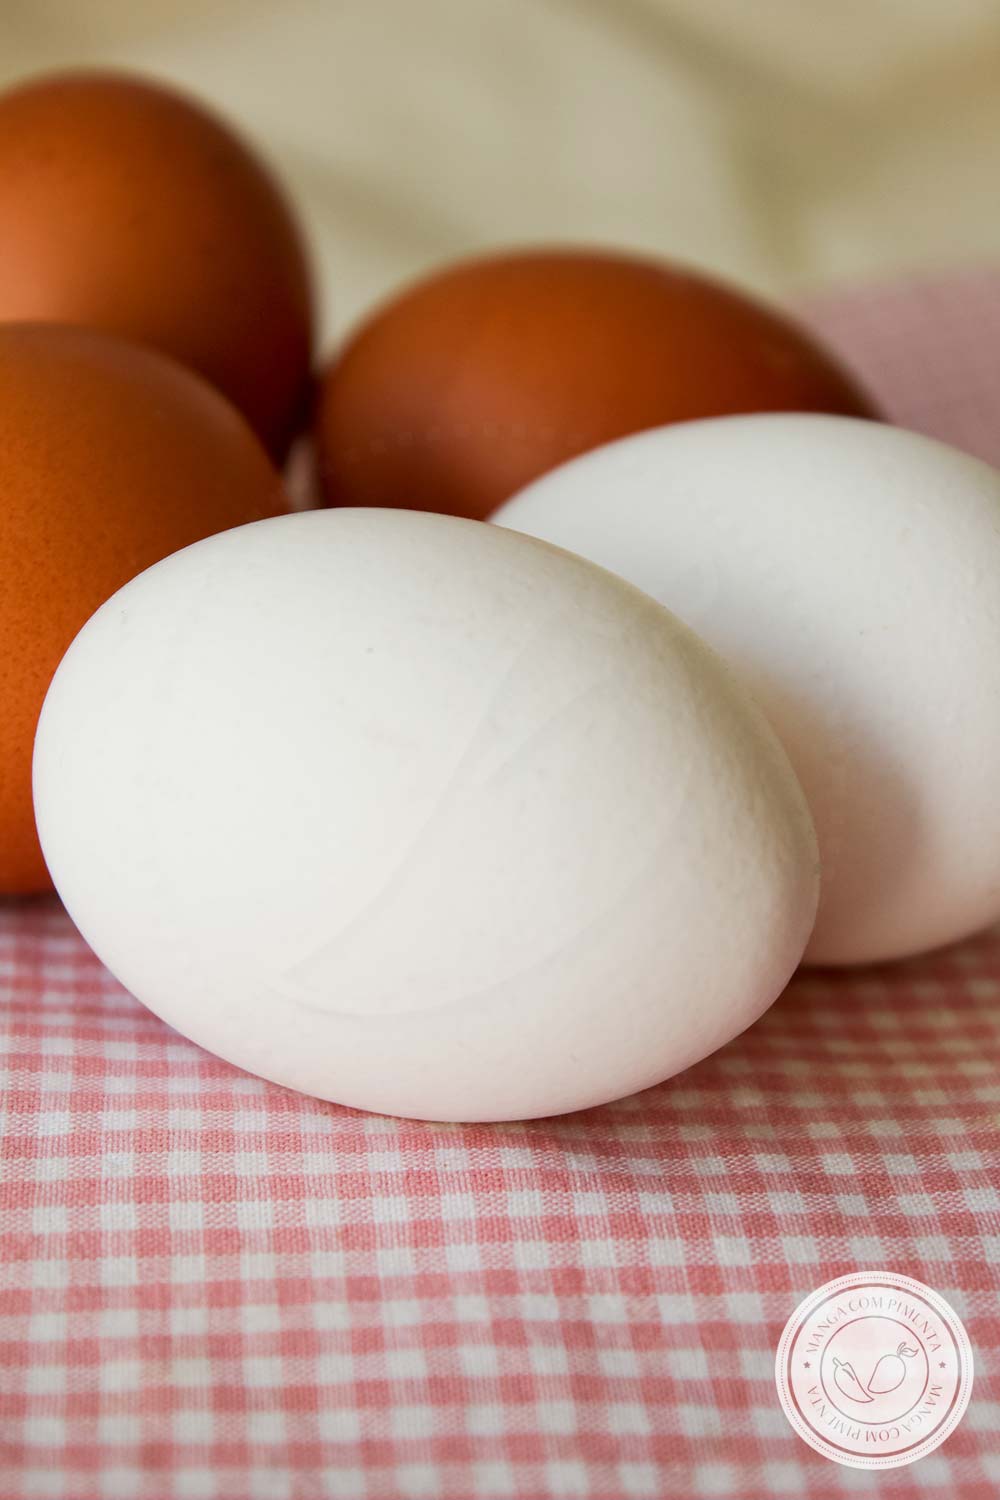 Ovos Brancos e Vermelhos, qual é a diferença entre eles? Qual é mais nutritivo? Vamos conhecer mais sobre esse alimento.